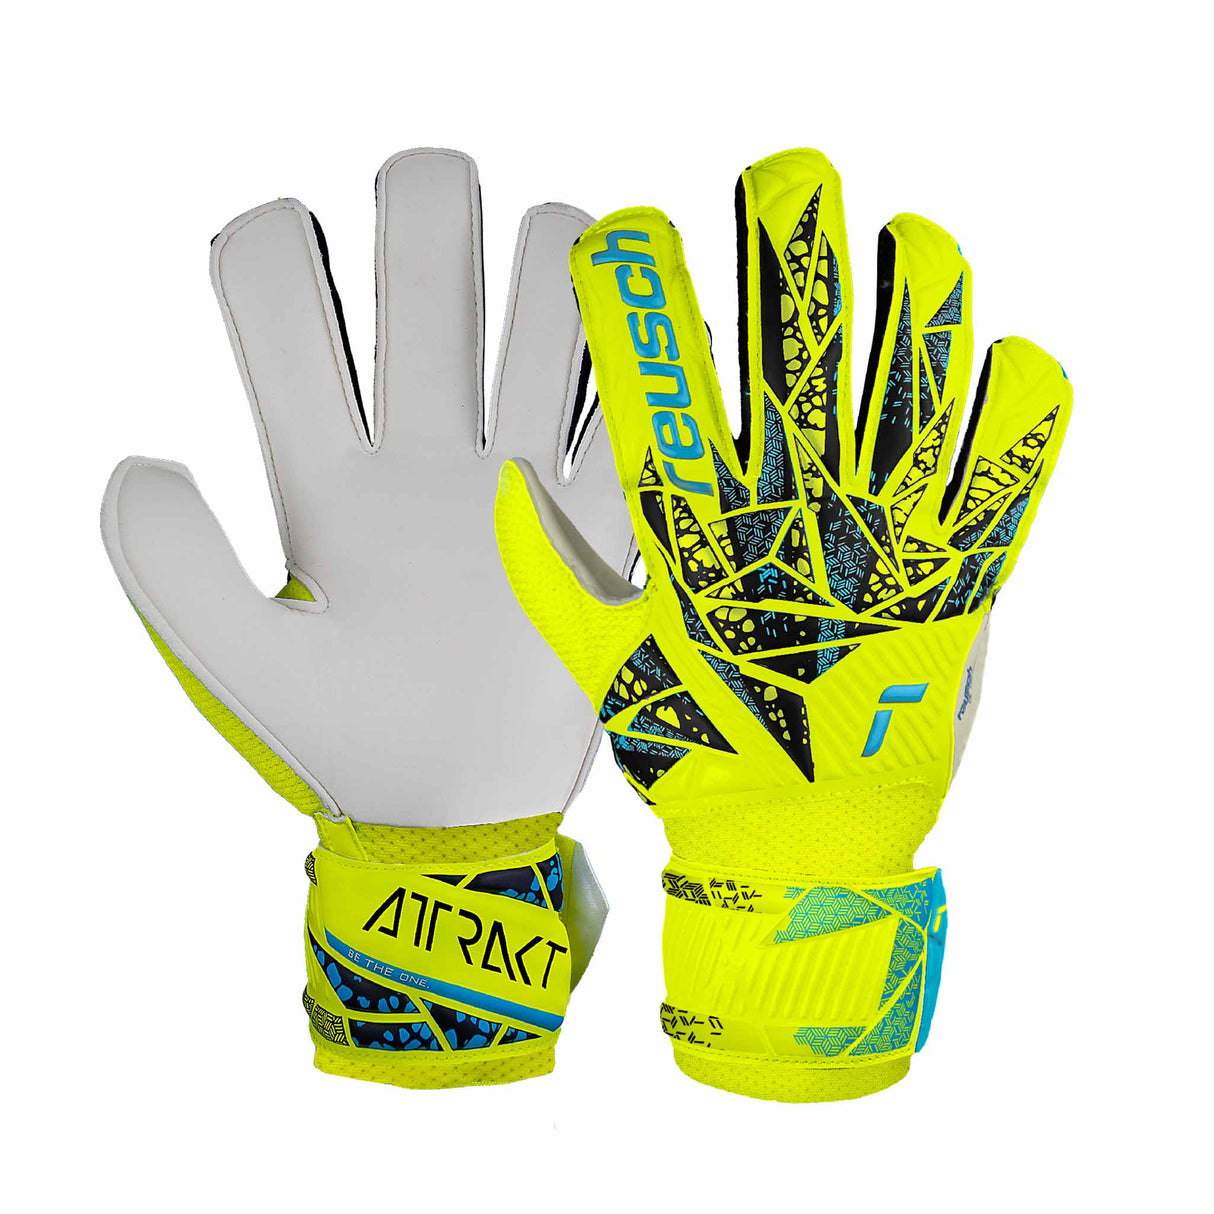 Reusch Attrakt Solid junior gants de gardien de soccer - Jaune / Bleu